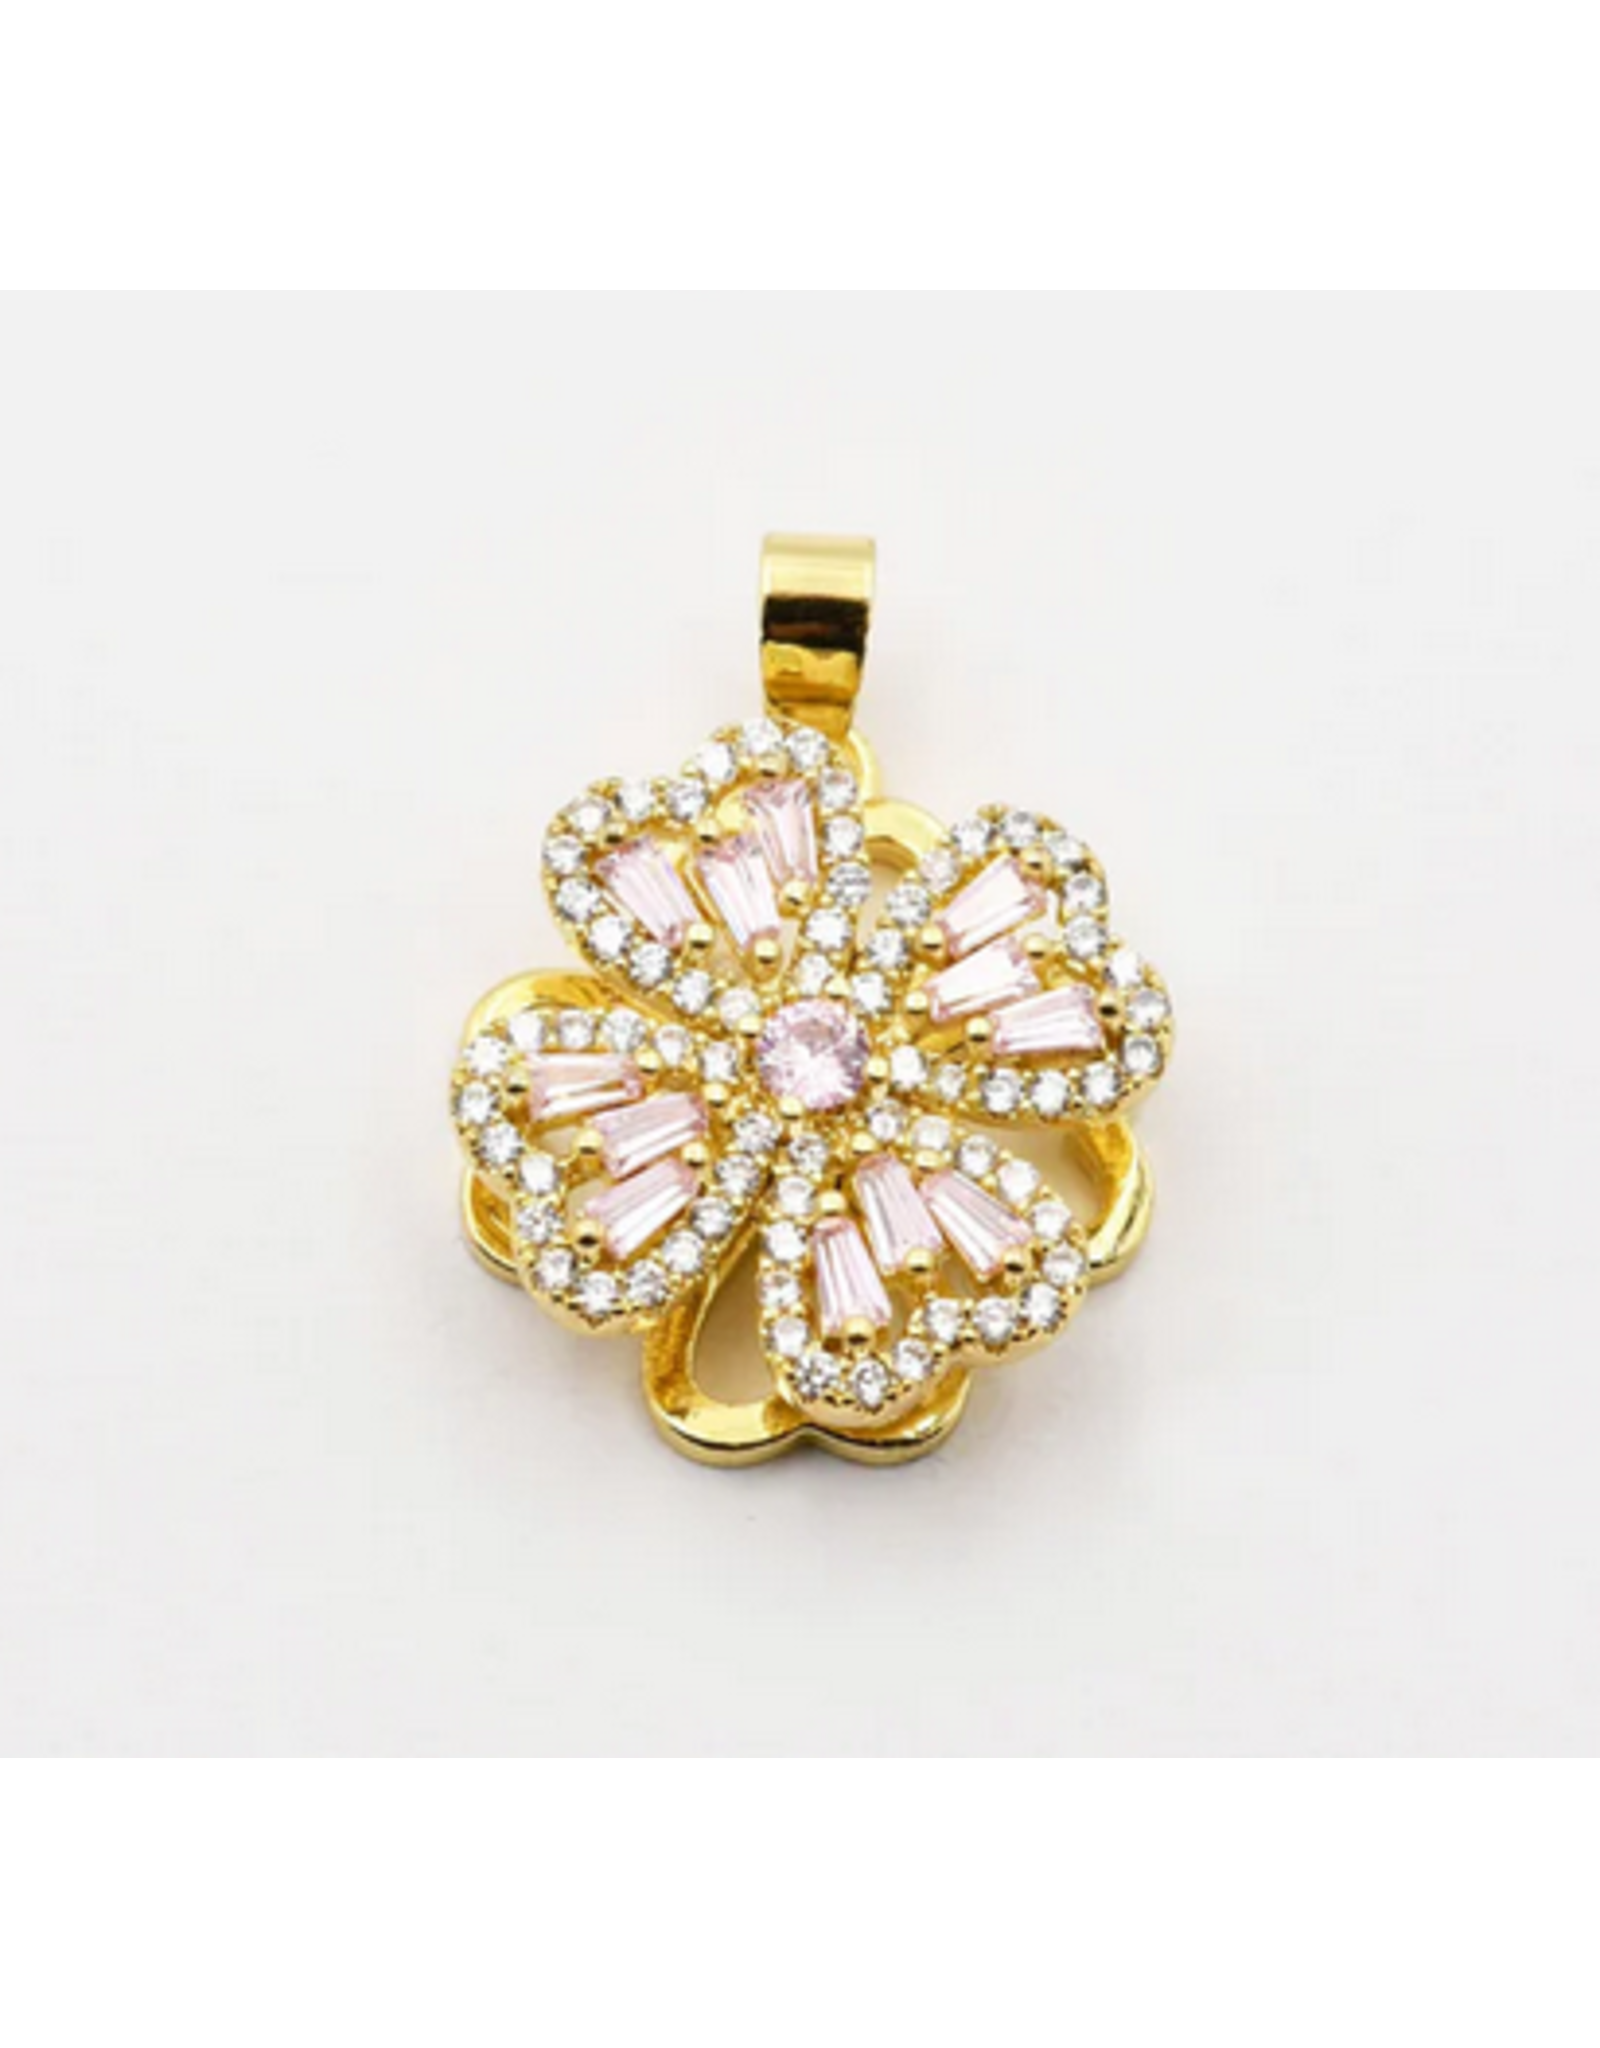 Treasure Jewels Crystal Flower Charm